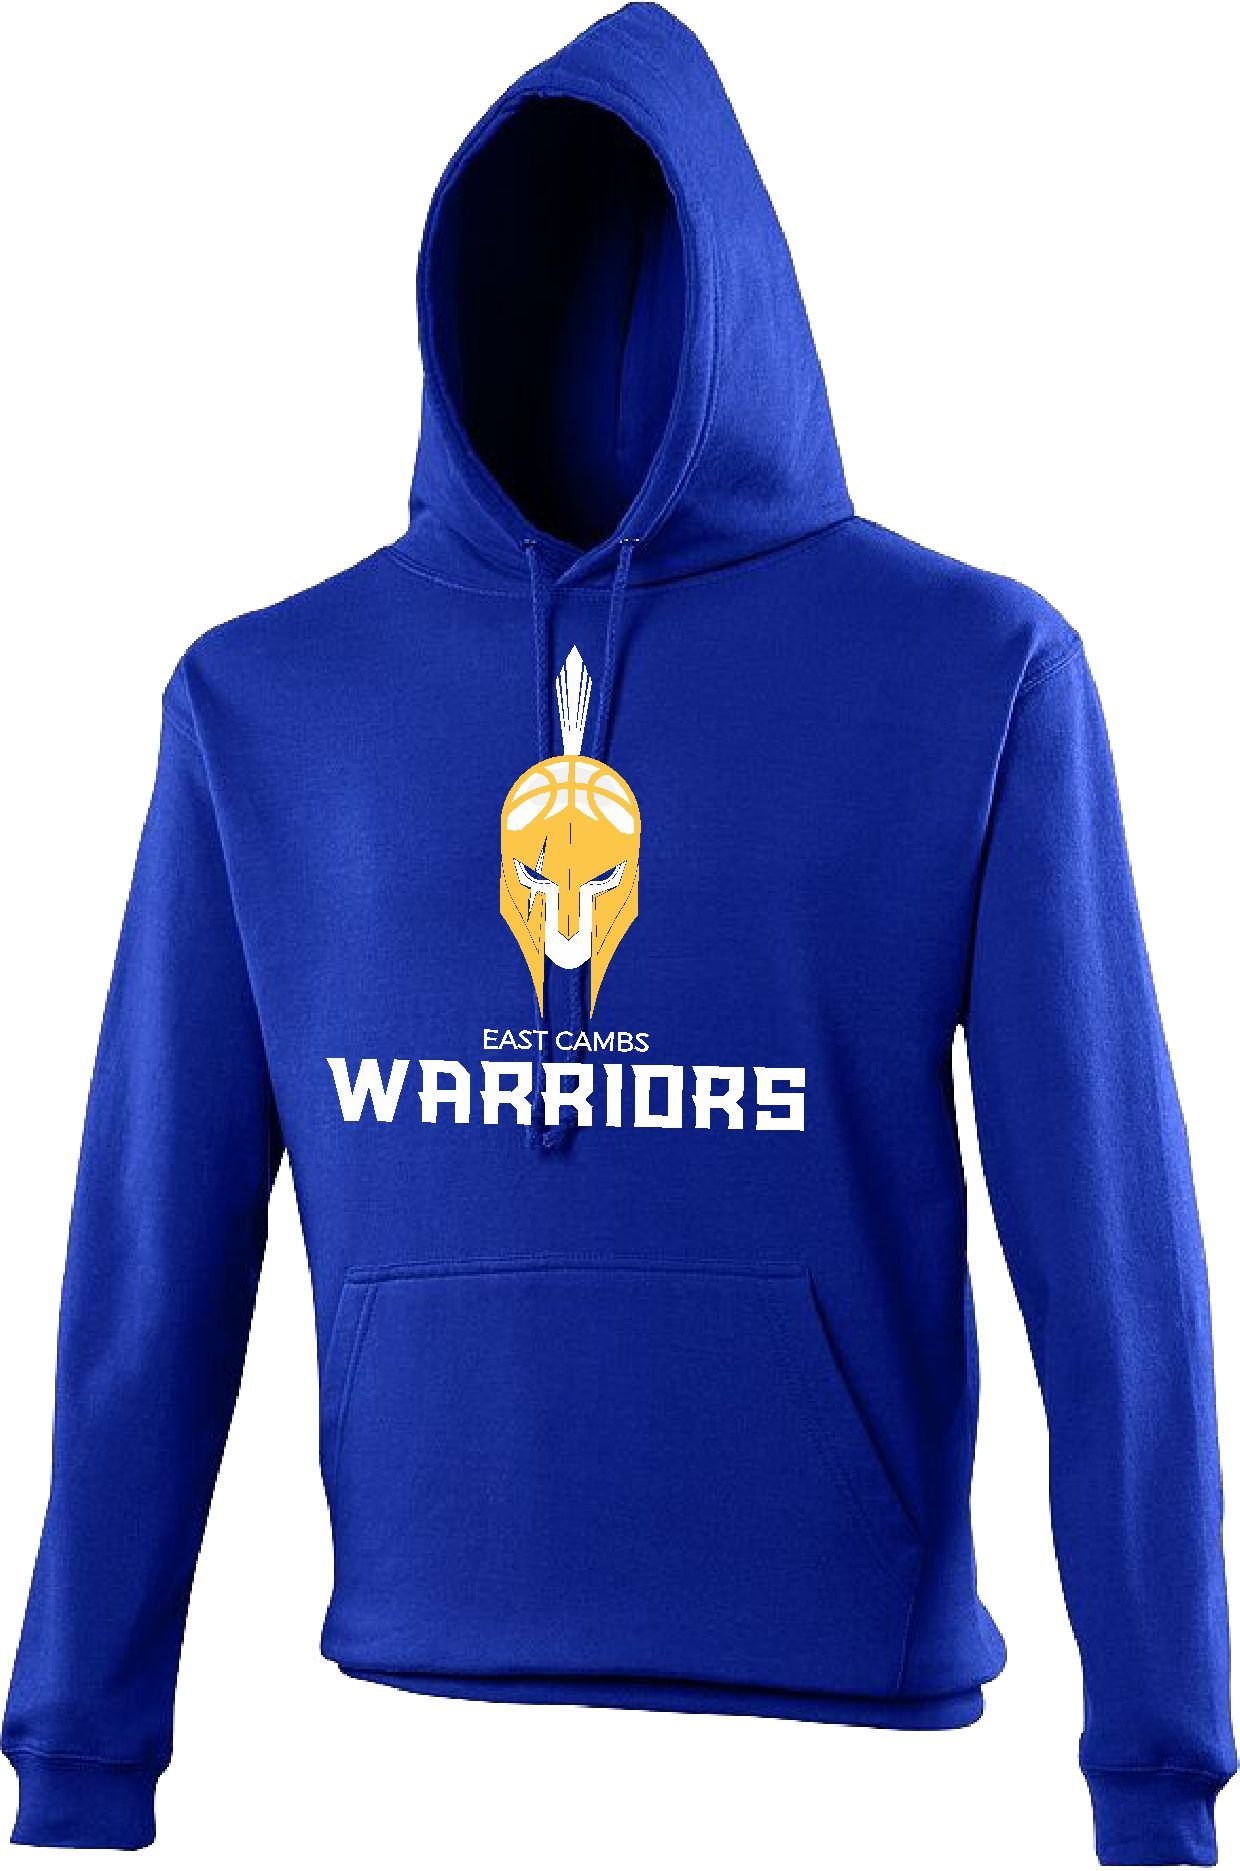 Warriors - Original Hoodie (Royal Blue)